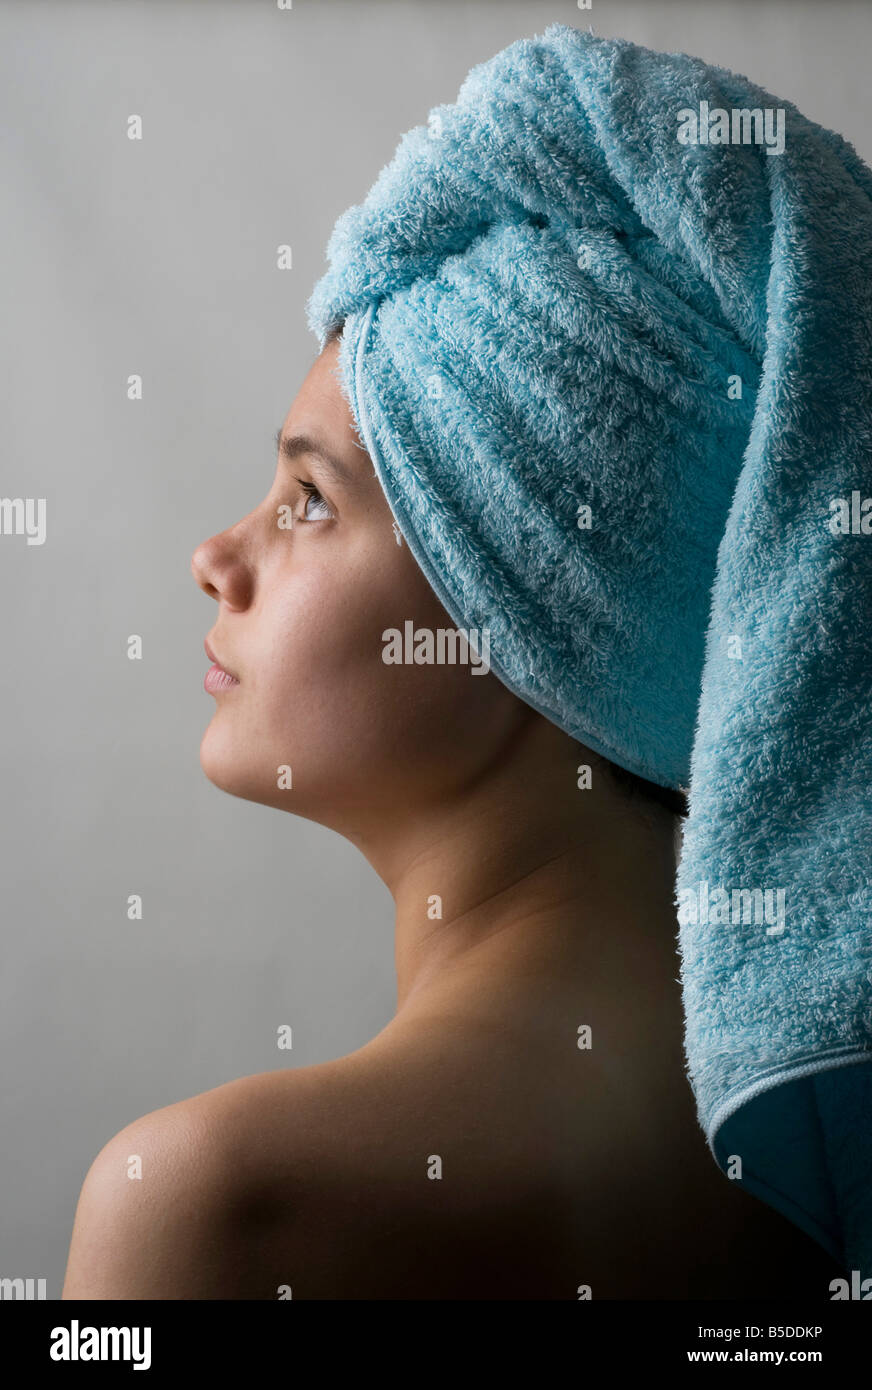 Piuttosto giovane adolescente con la testa avvolta in un asciugamano dopo il lavaggio i capelli Foto Stock